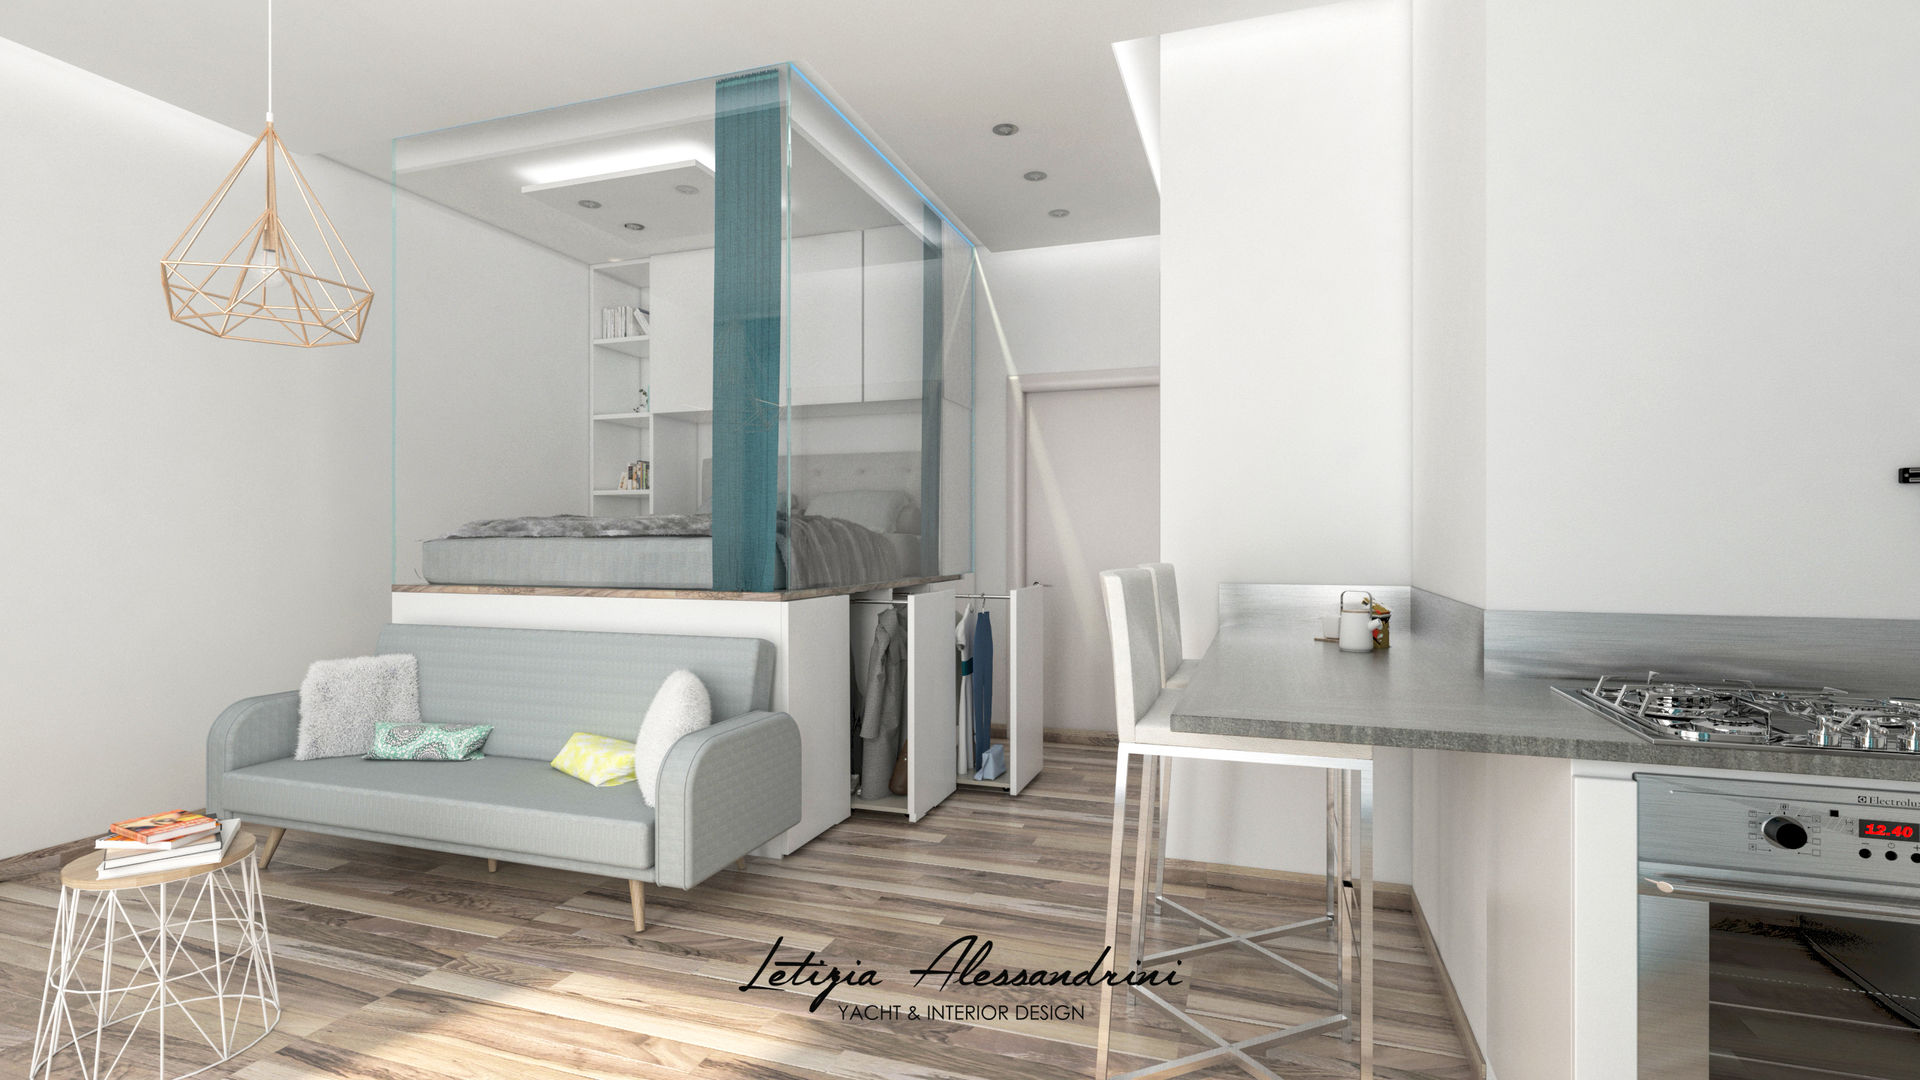 Monolocale a Milano, Letizia Alessandrini - Yacht & Interior Design Letizia Alessandrini - Yacht & Interior Design Modern living room